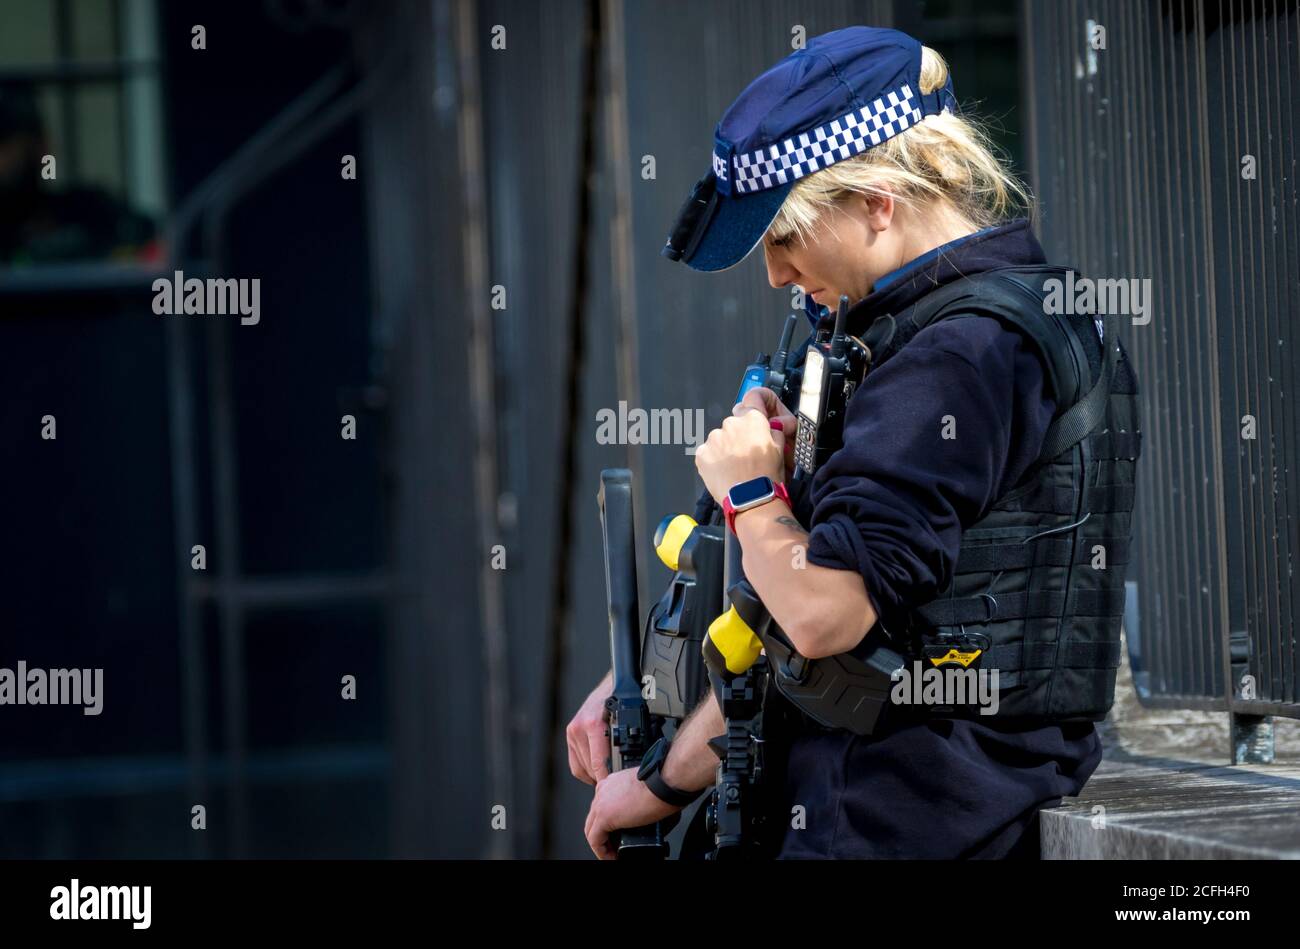 Westminster, London, UK. 5th September, 2020.Armed female police officer Central London, UK Stock Photo